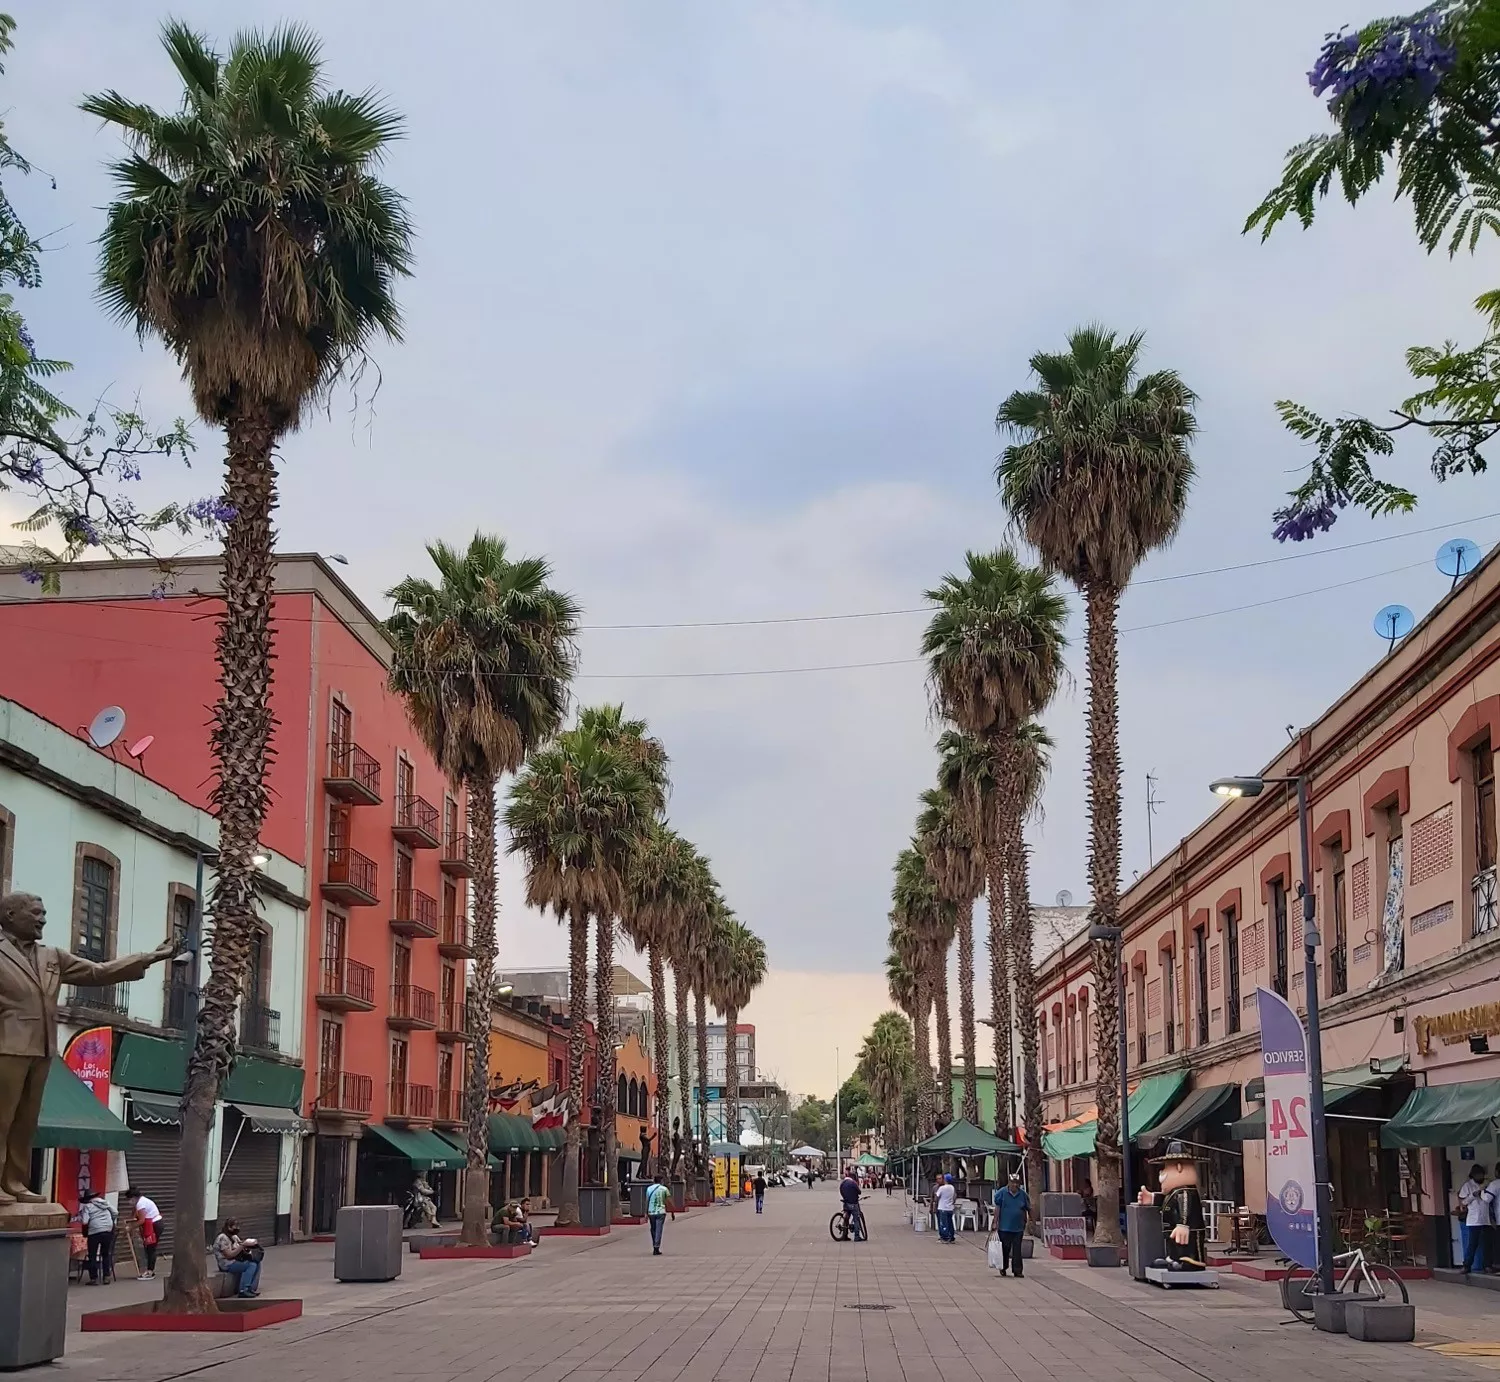 Mexico City - Plaza Garibaldi cez den